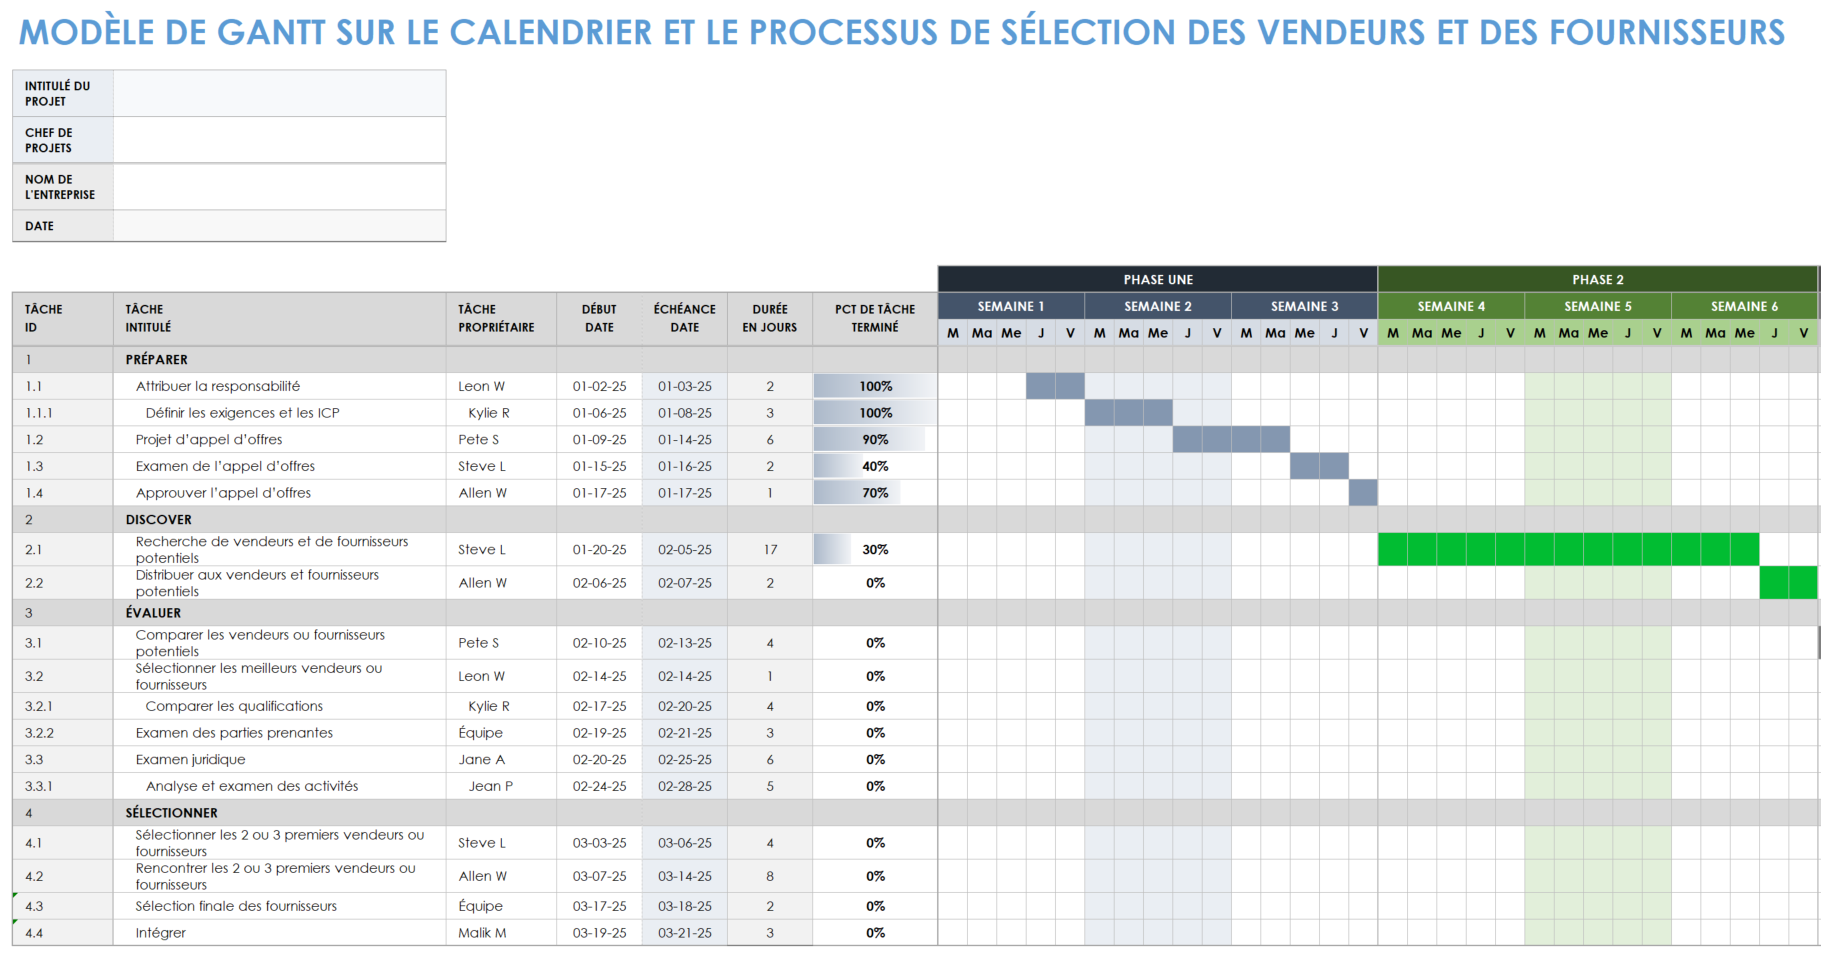 Chronologie du processus de sélection des fournisseurs et des fournisseurs Gantt